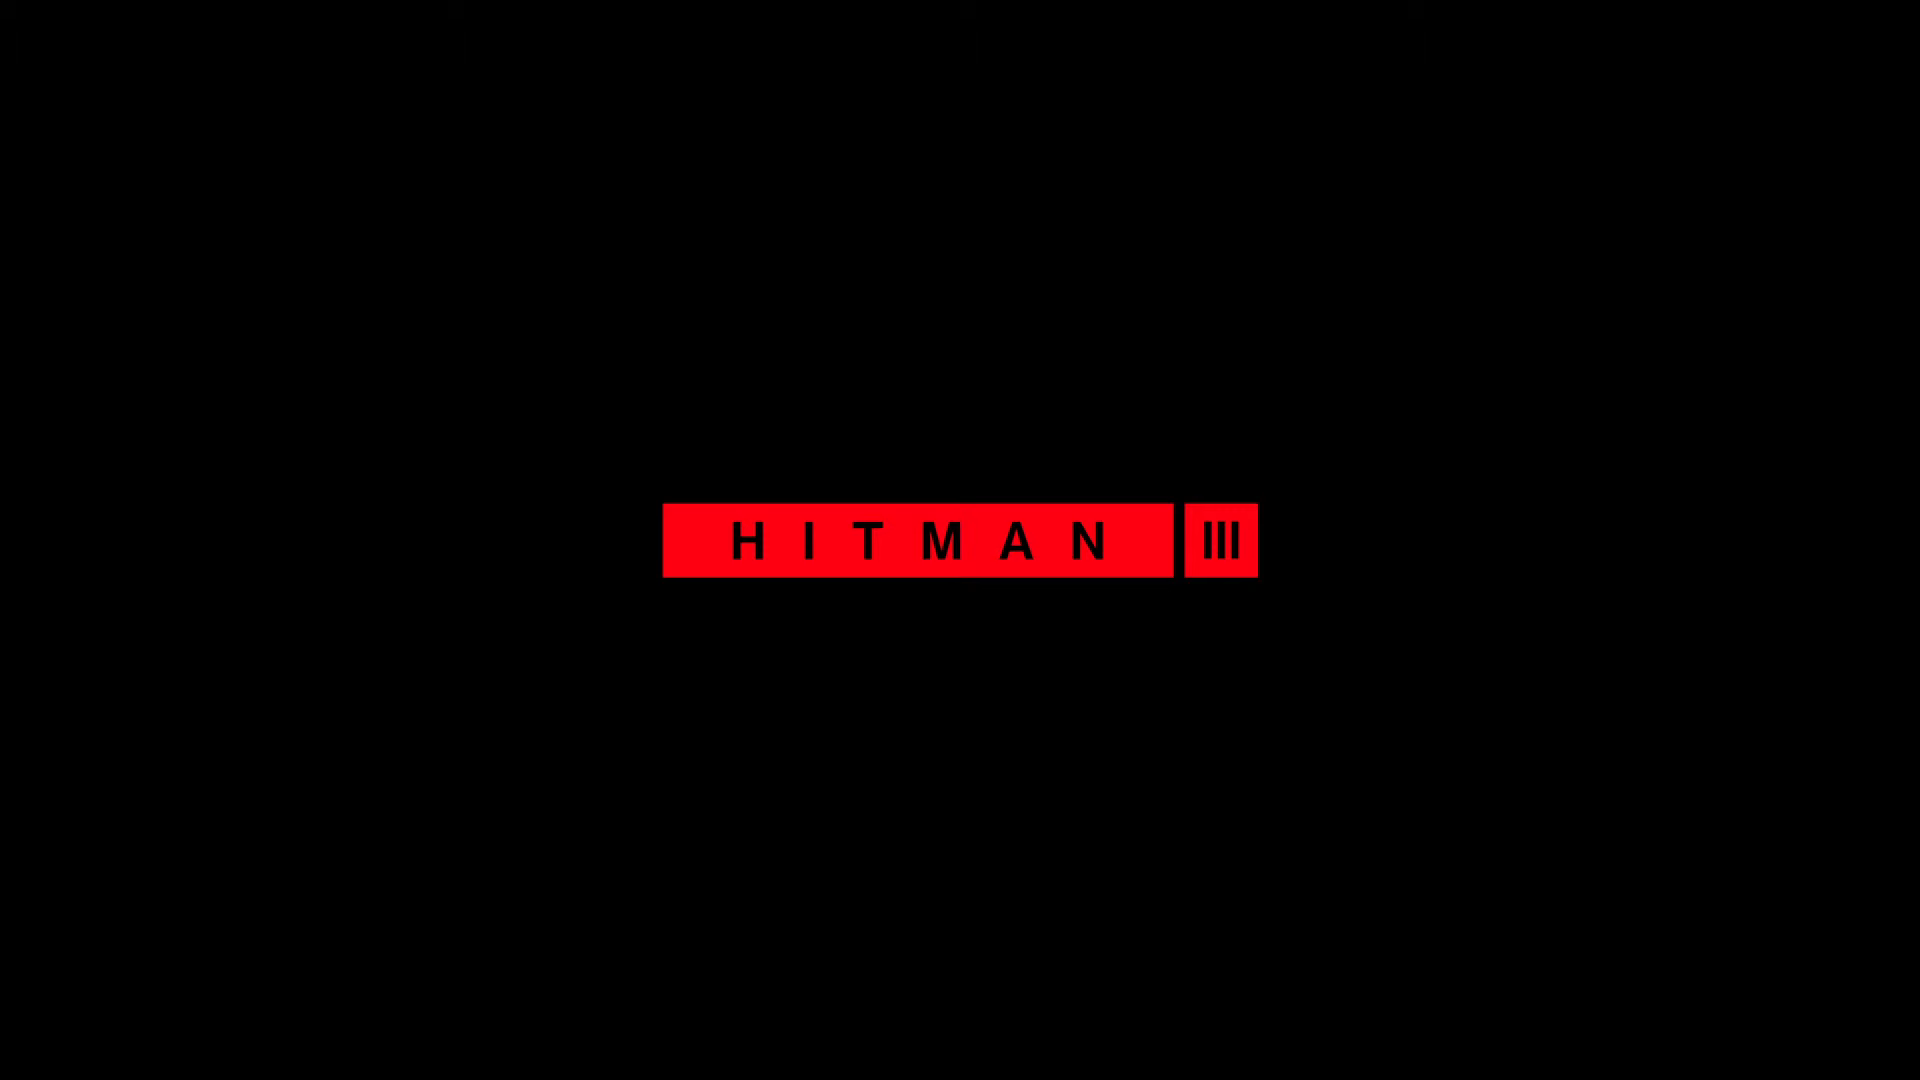 Hitman 3 Wallpaper Free Hitman 3 Background